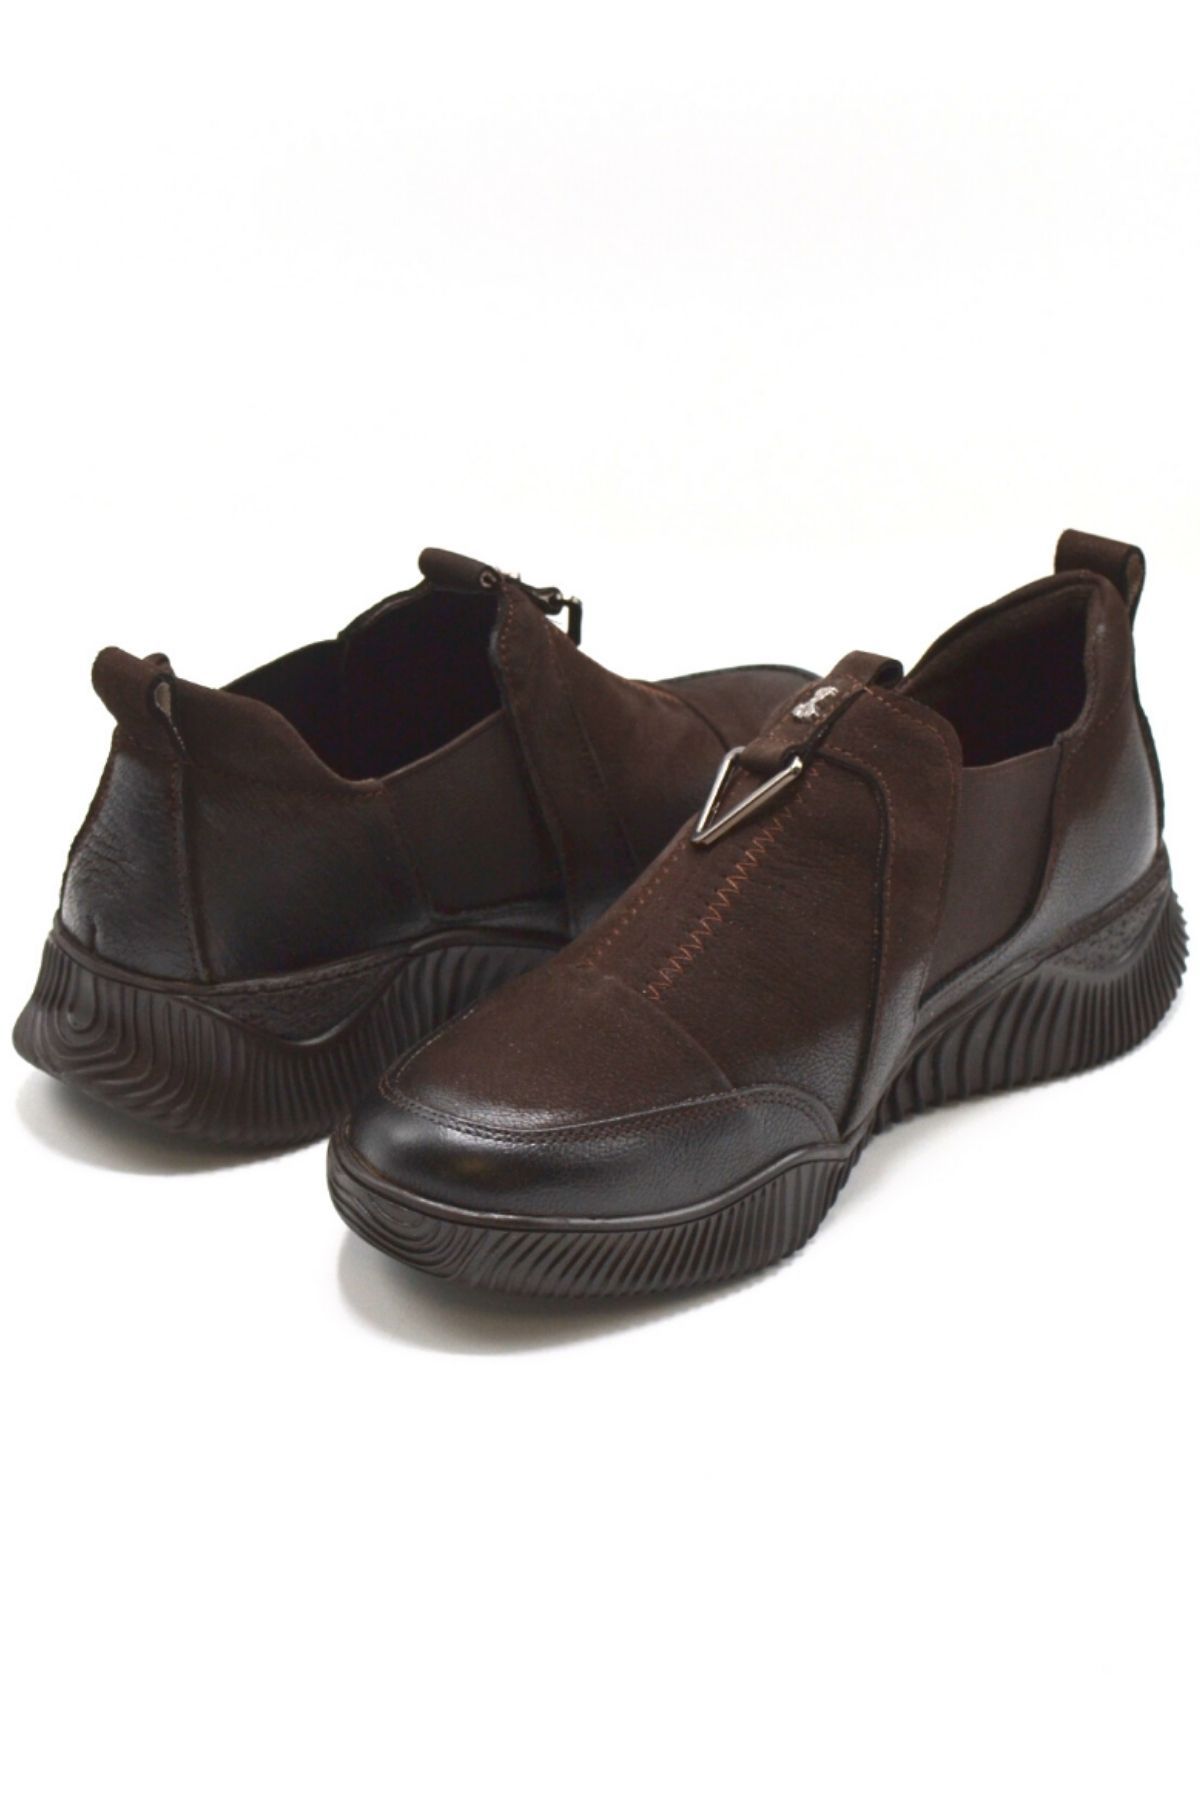 Kadın Comfort Deri Ayakkabı Kahve 1953840K